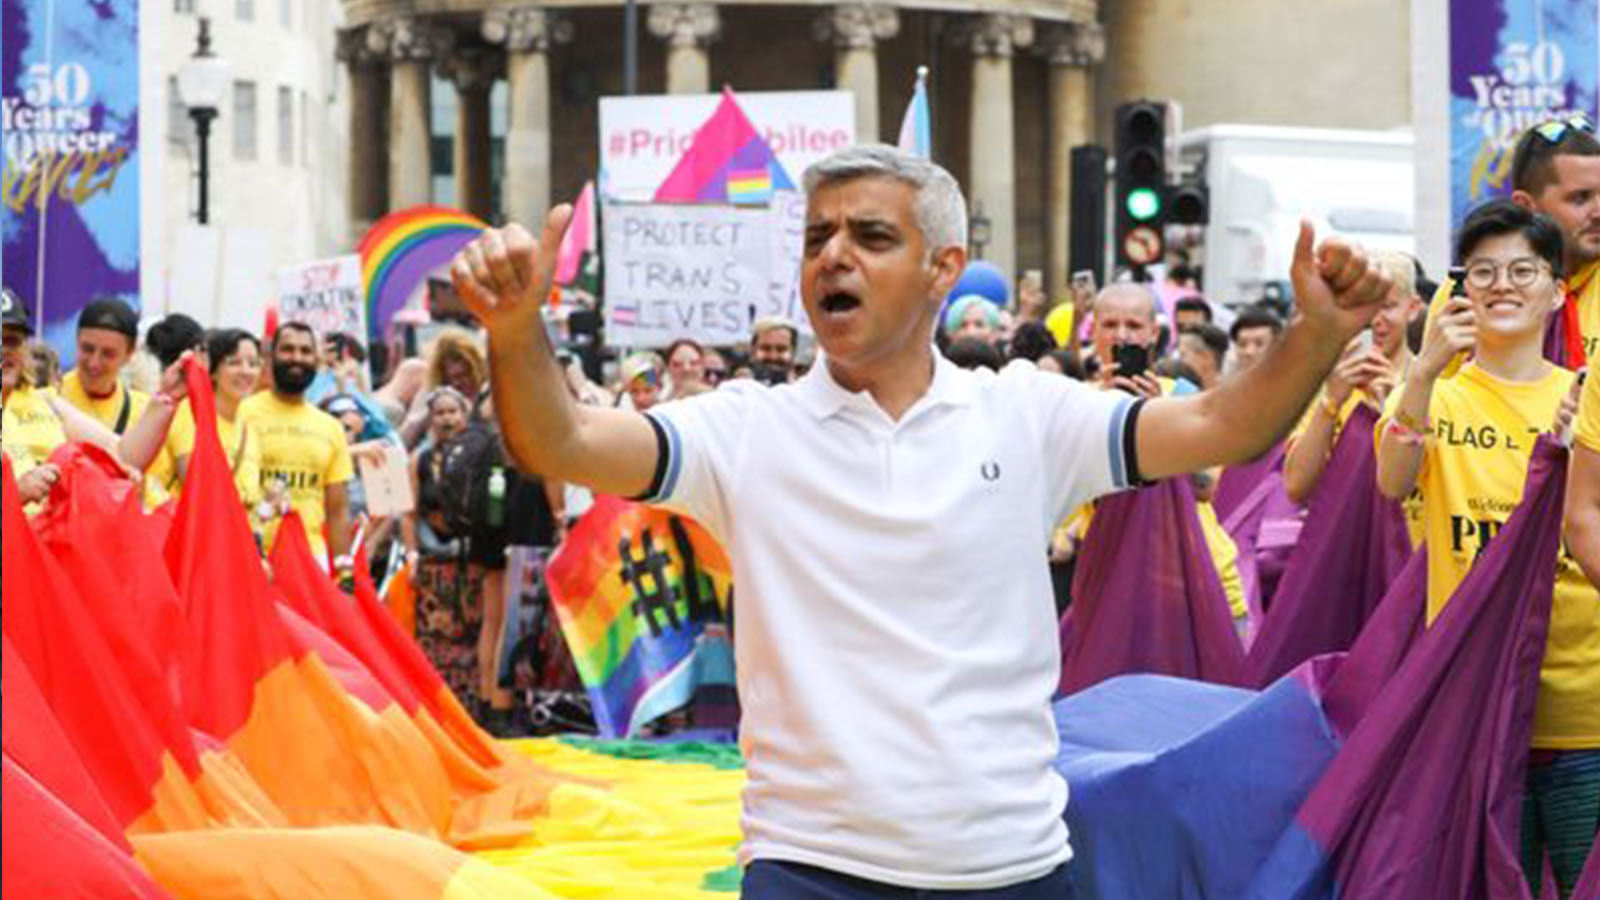 Eşcinsel evlilikleri savunması ve içki içmemesine rağmen kampanyasını bir barda başlatması gibi özellikleriyle Khan, Londralı seçmenler için Müslümanlara karşı önyargıları yıkan bir profil çiziyor.